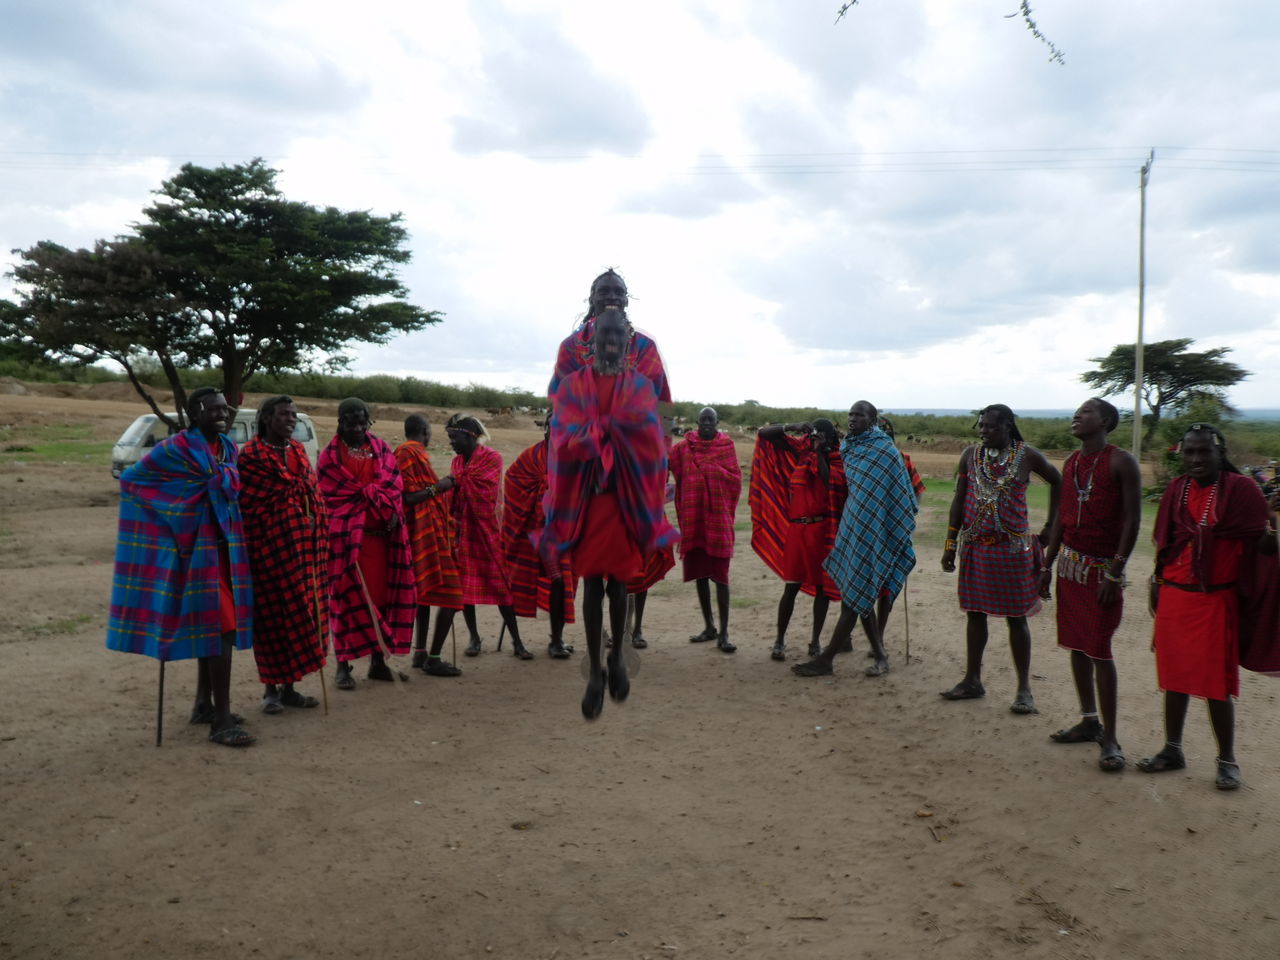 ケニア タンザニア旅行 その６ マサイ族の村訪問 ひまがあれば海外 女子一人旅